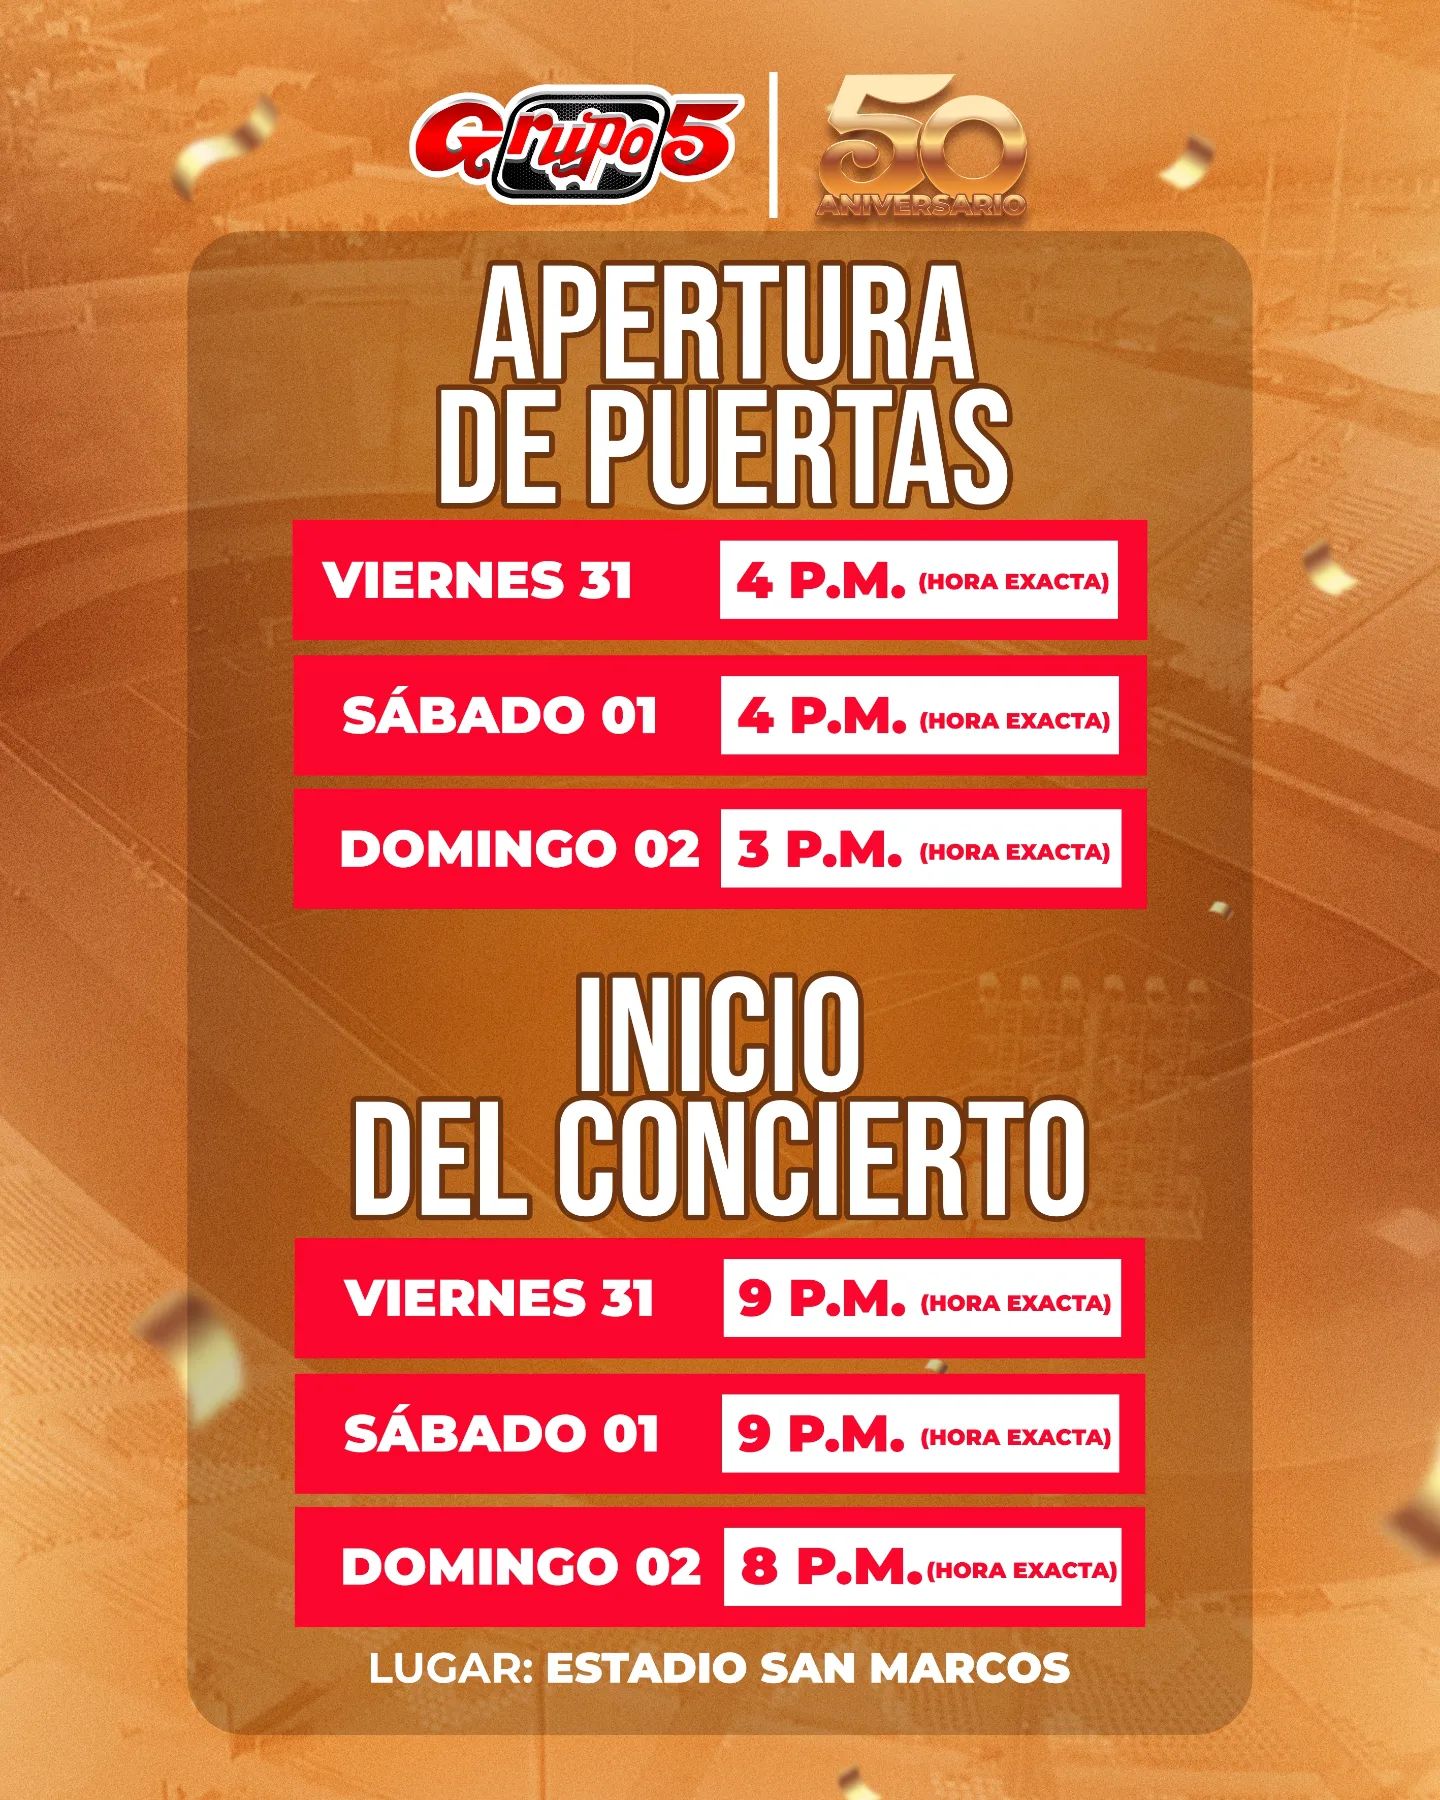 Programación de los conciertos del Grupo 5 en el Estadio San Marcos. Facebook